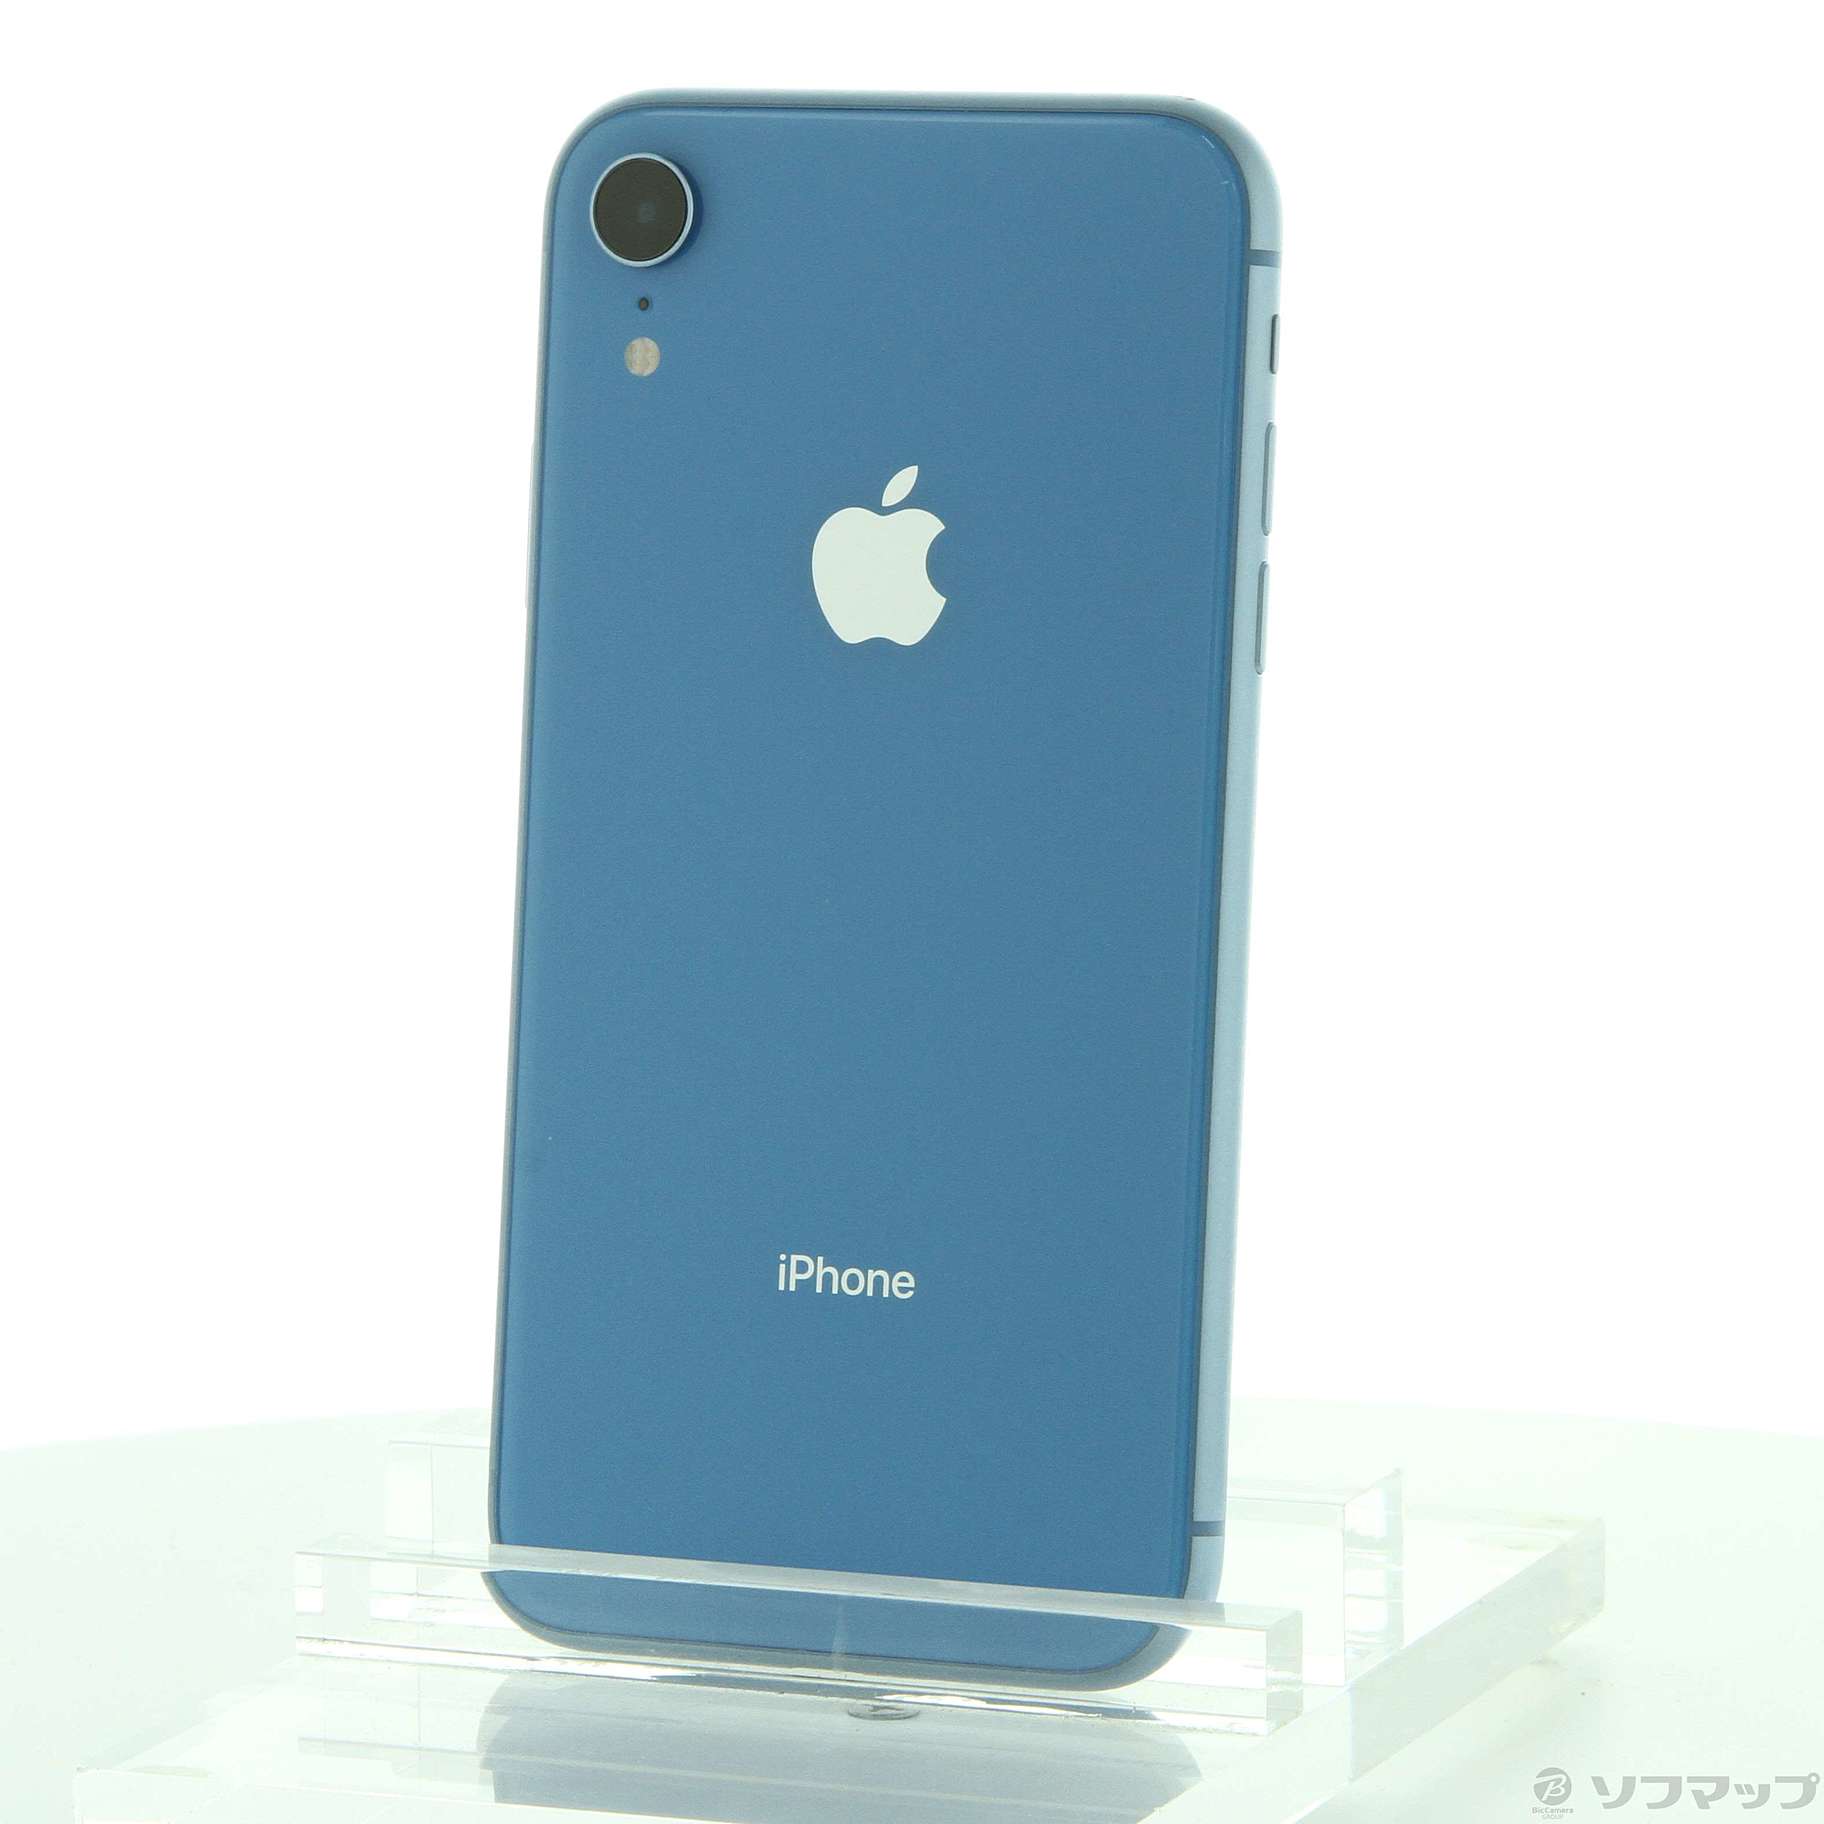 9,702円iPhone XR ブルー 128GB